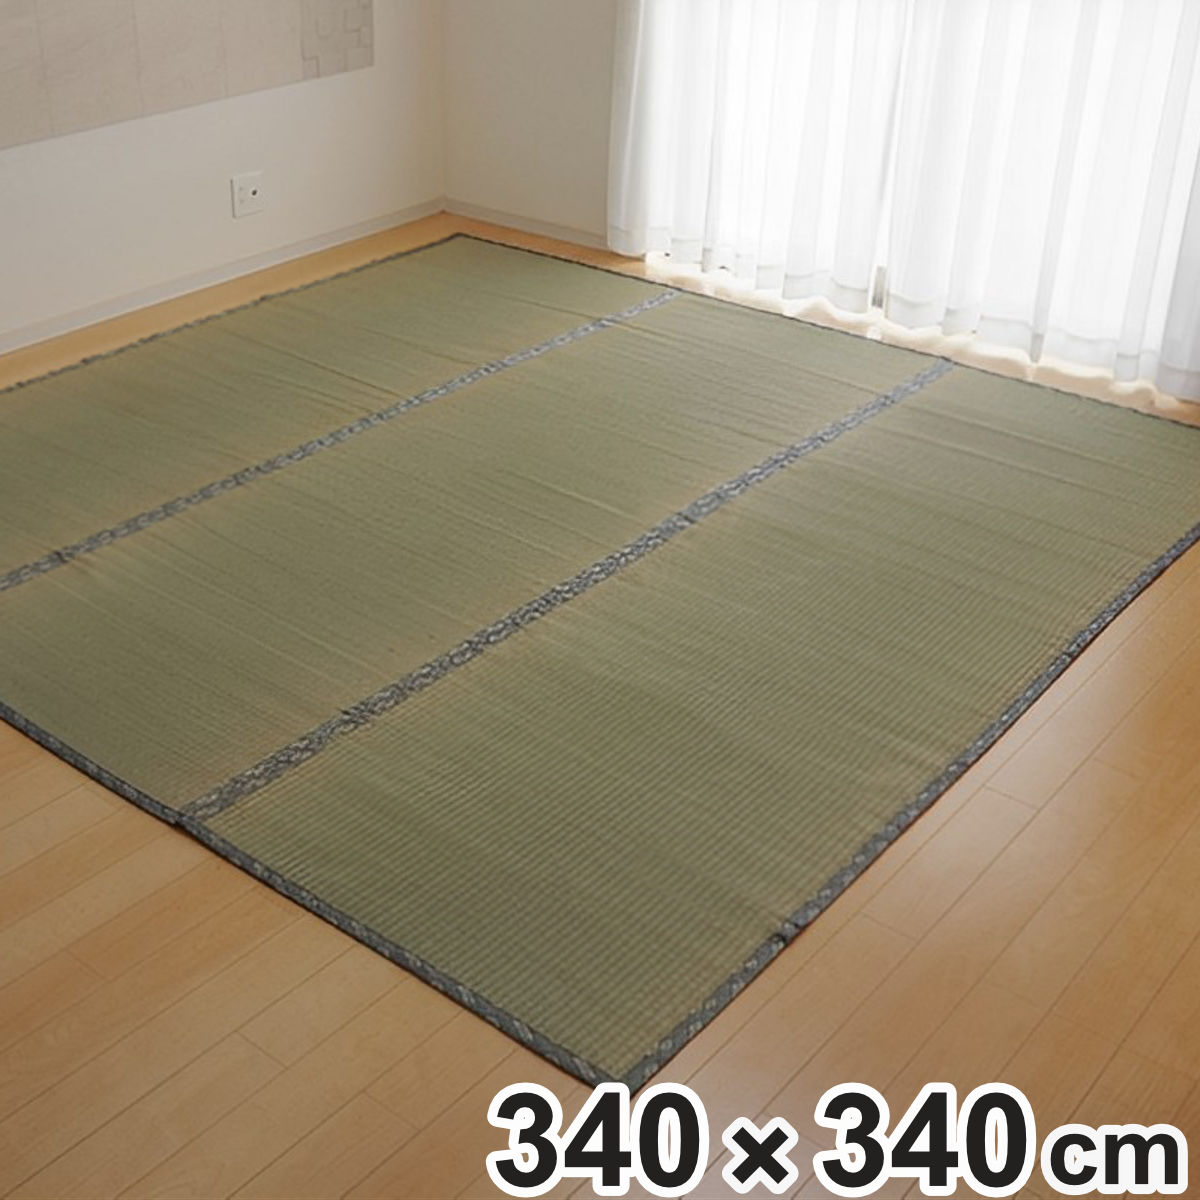 い草上敷き 純国産 い草 カーペット 糸引織 湯沢 団地間8畳 約340